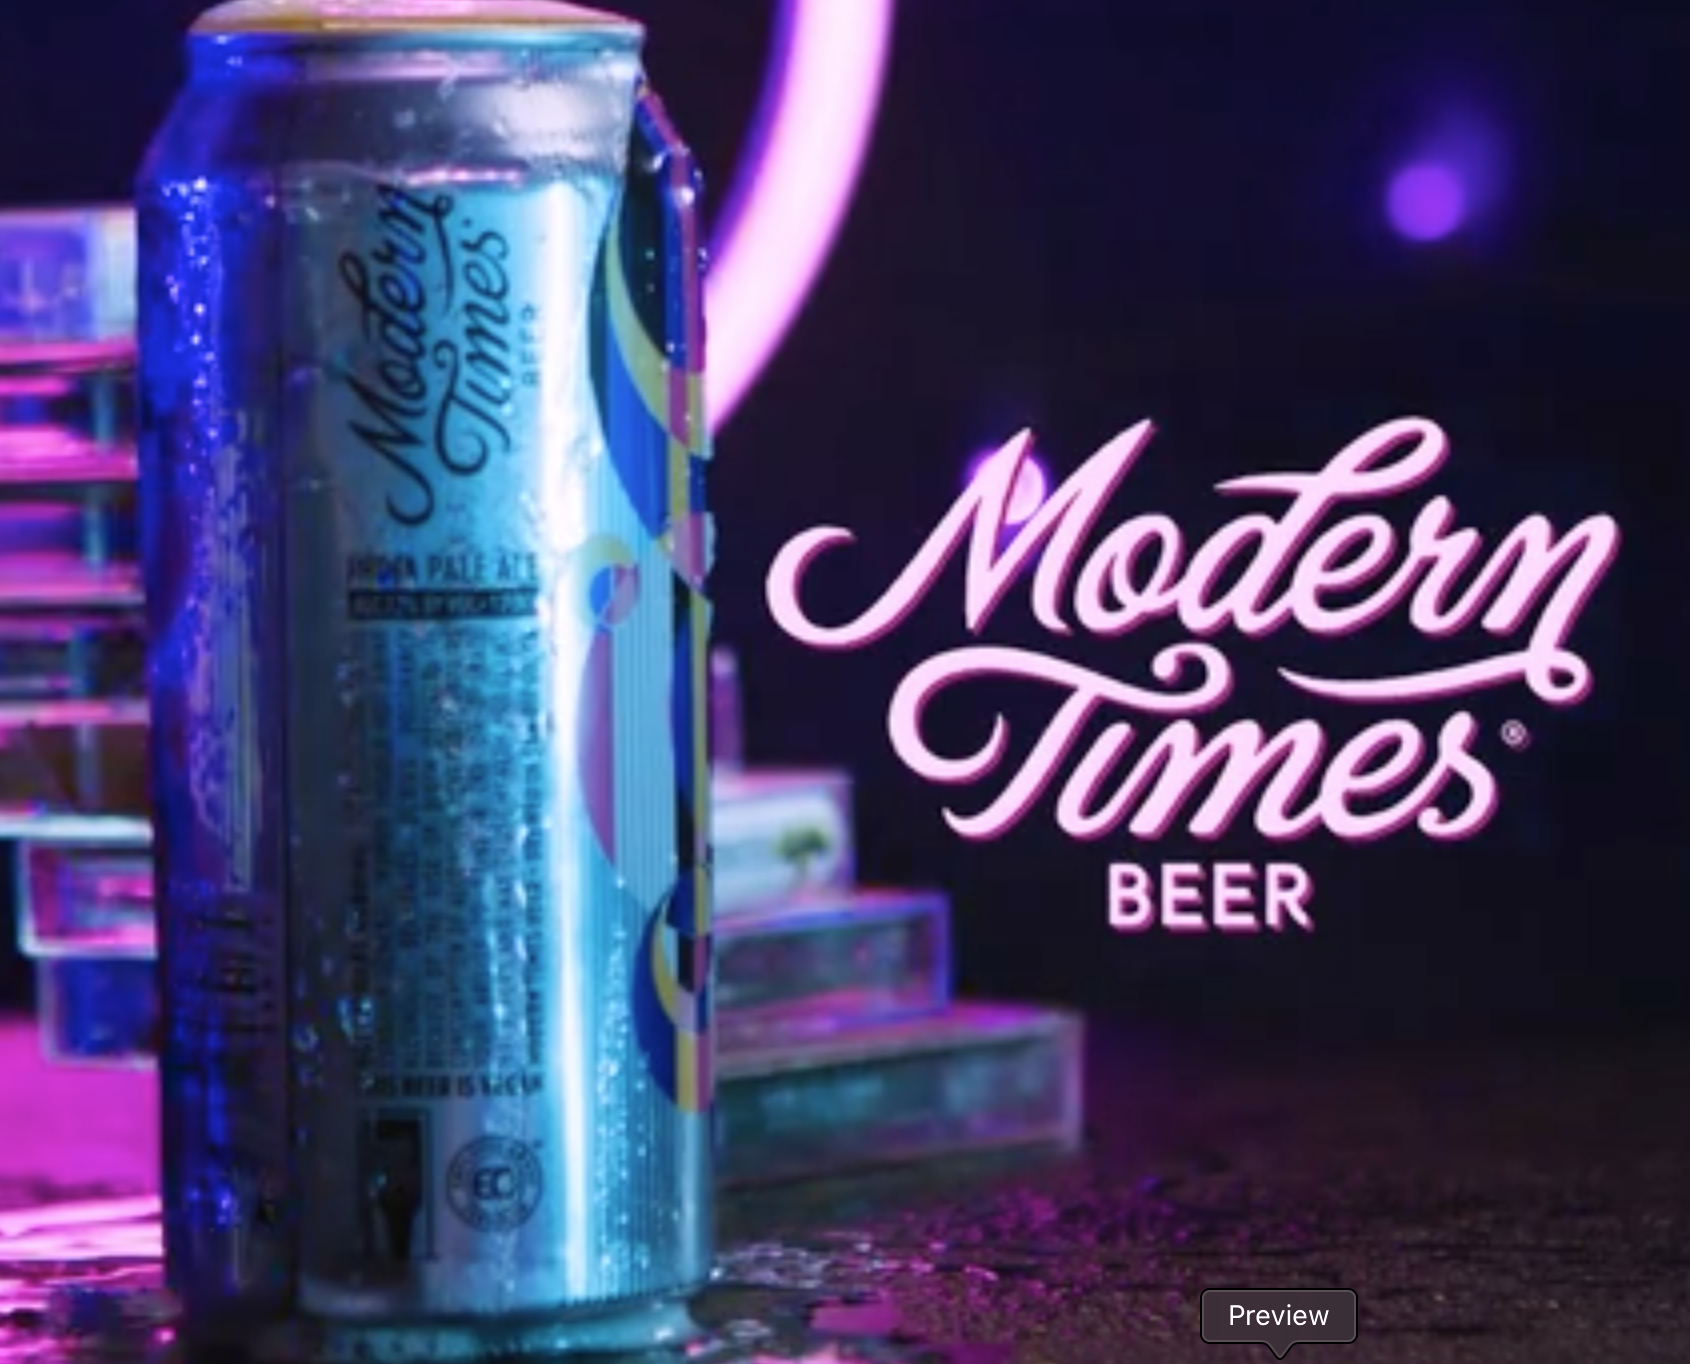 Modern Times Beer (Dreamspeaker) IPA (2018) Director